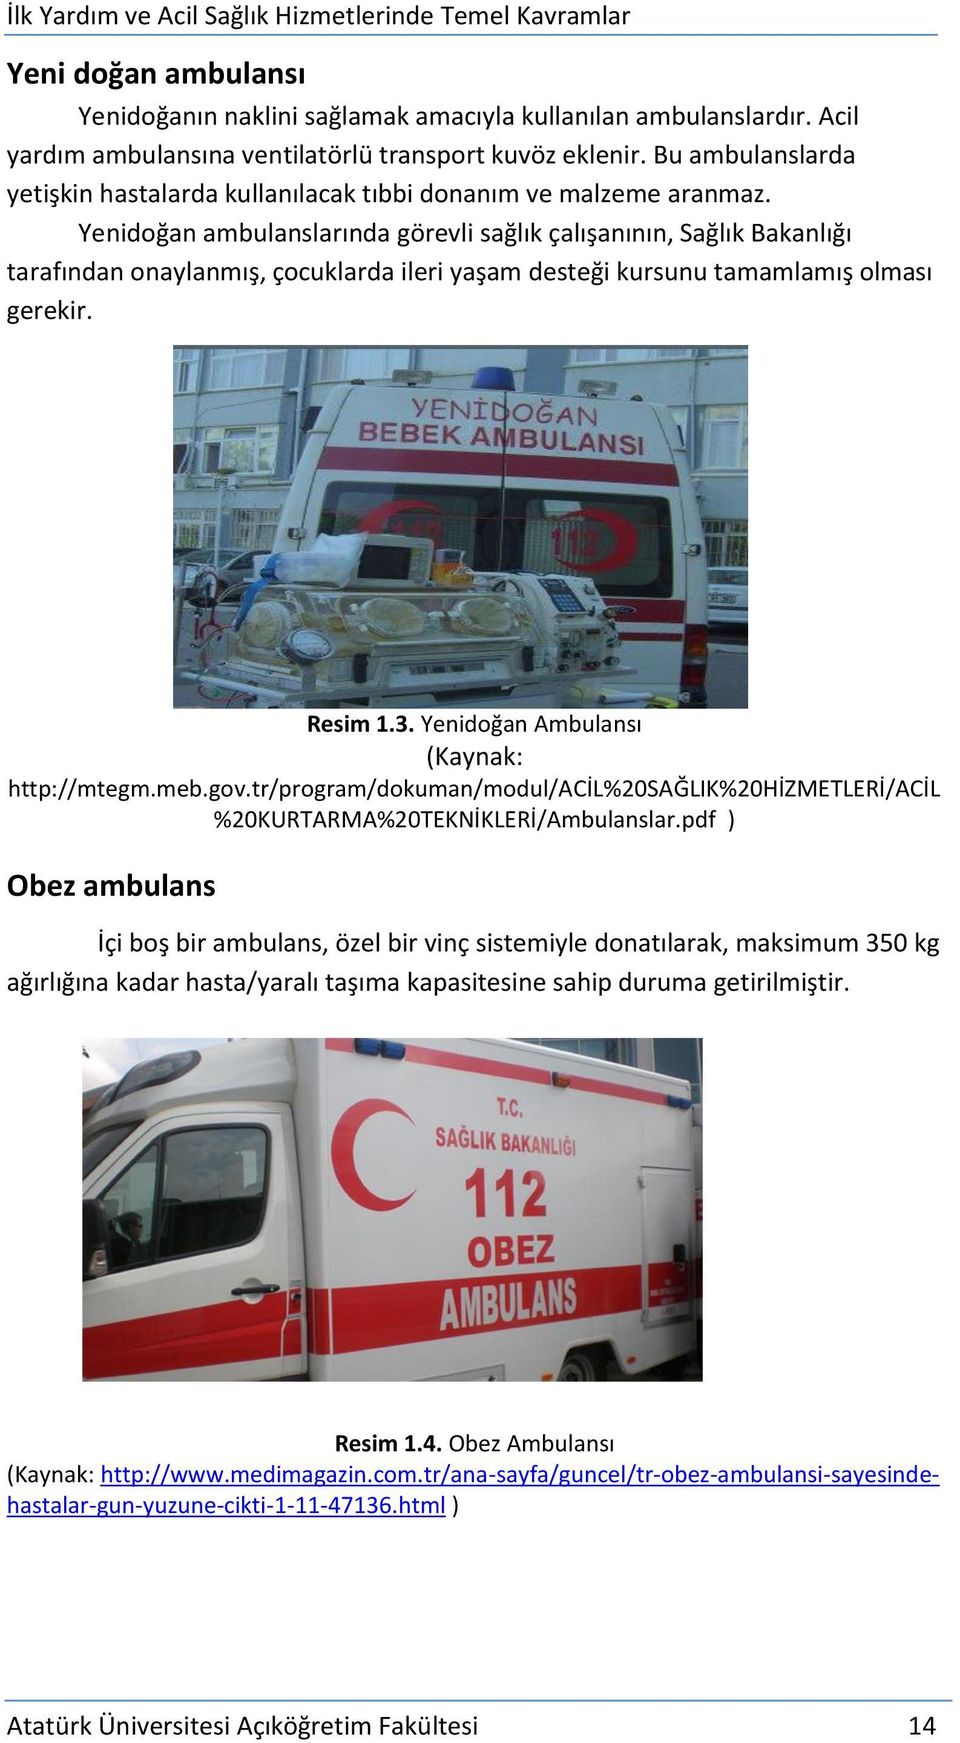 Yenidoğan ambulanslarında görevli sağlık çalışanının, Sağlık Bakanlığı tarafından onaylanmış, çocuklarda ileri yaşam desteği kursunu tamamlamış olması gerekir. Resim 1.3.